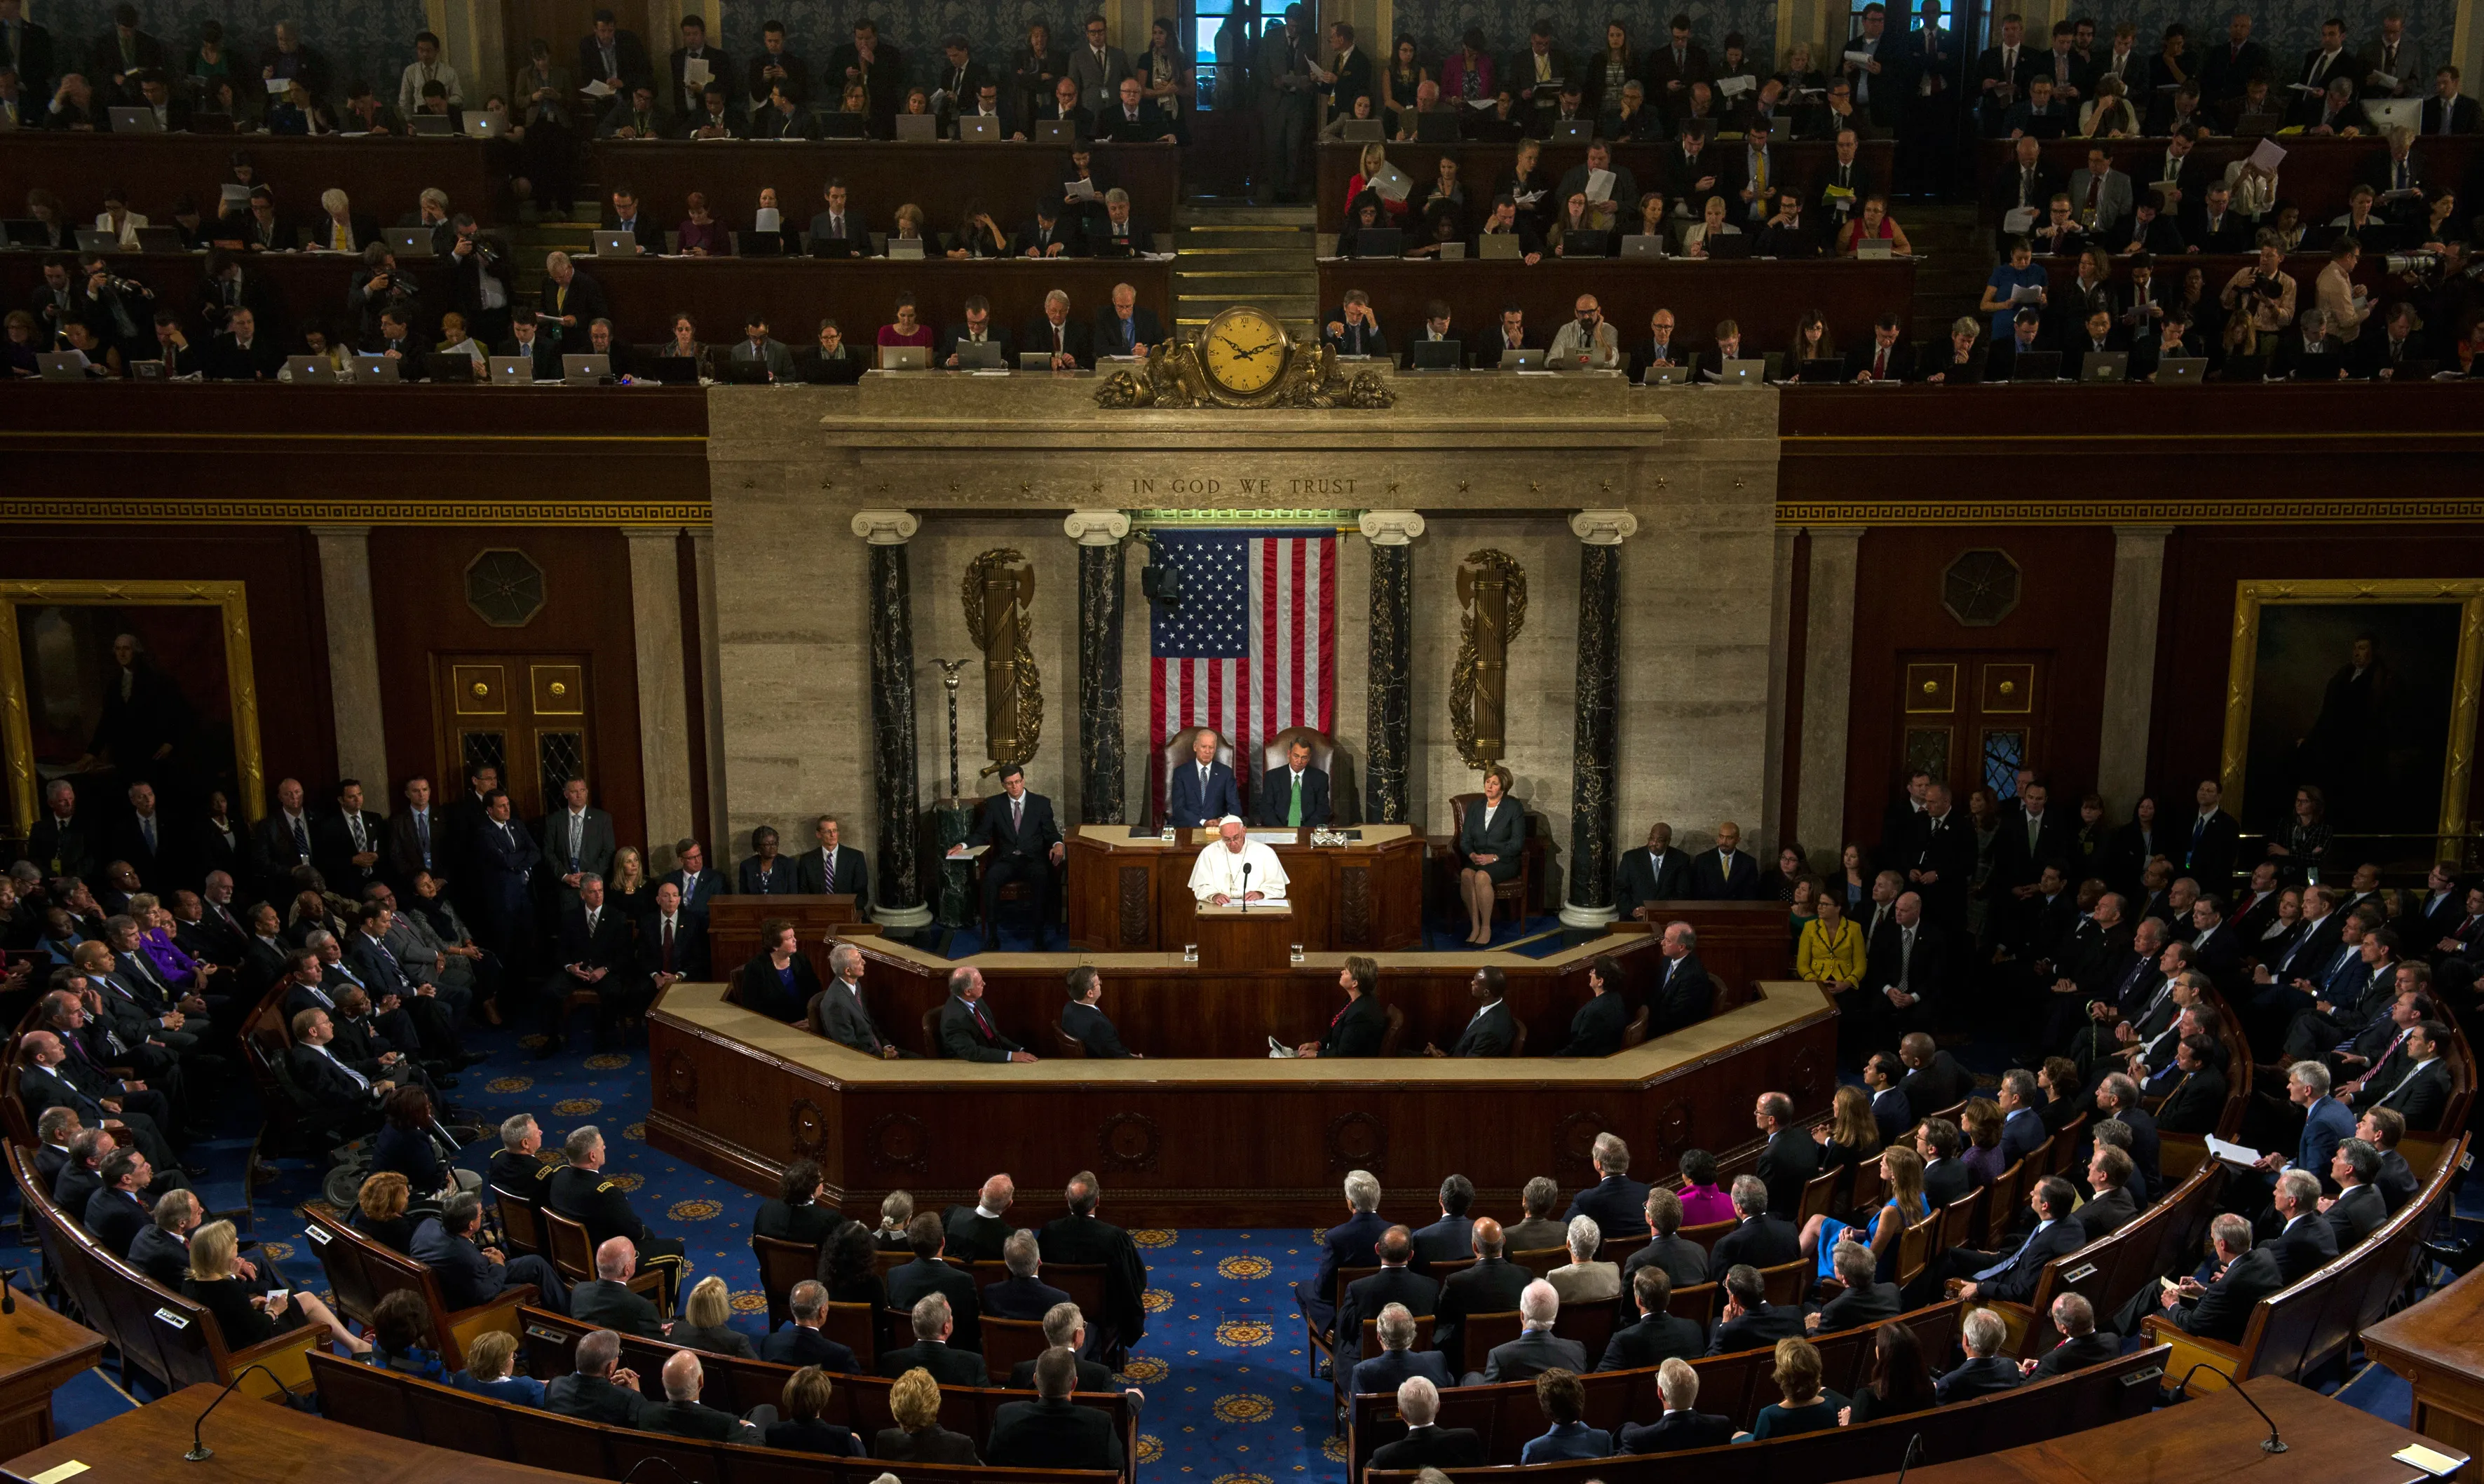 El Papa Francisco se dirige al Congreso de los Estados Unidos / Foto: L'Osservatore Romano?w=200&h=150